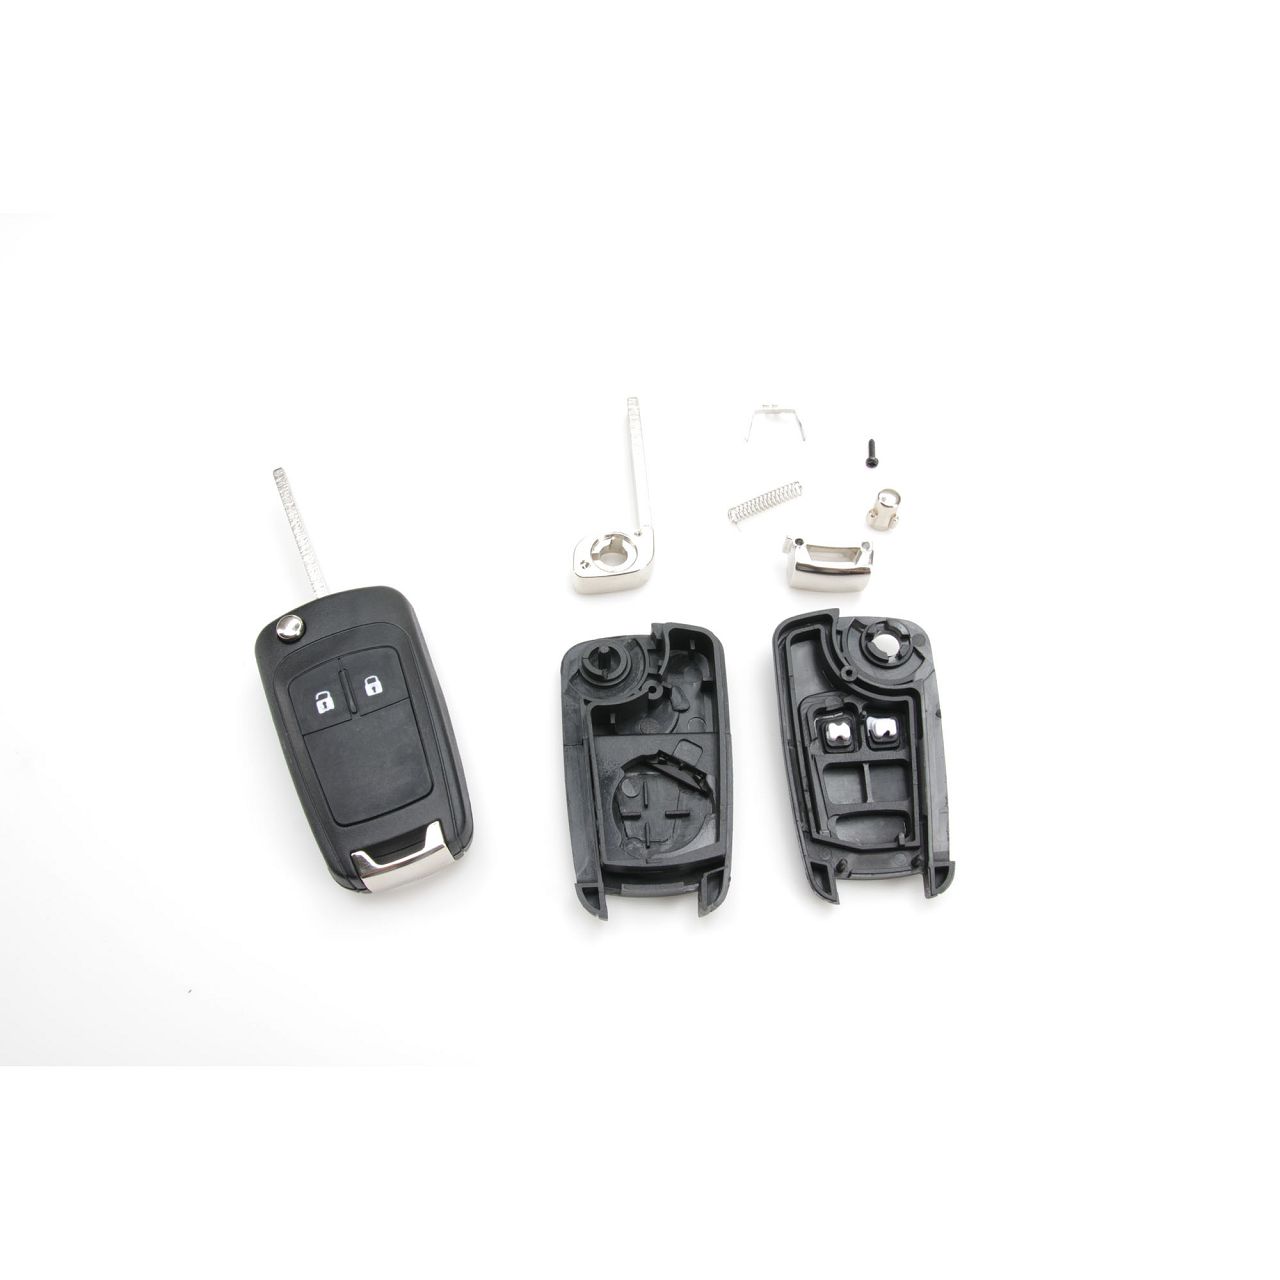 Autoschlüssel Gehäuse mit 3 Tasten Fernbedienung Kompatibel mit Mercedes  Benz Smart Schlüsselgehäuse Auto Schlüssel Funkschlüssel Ersatz